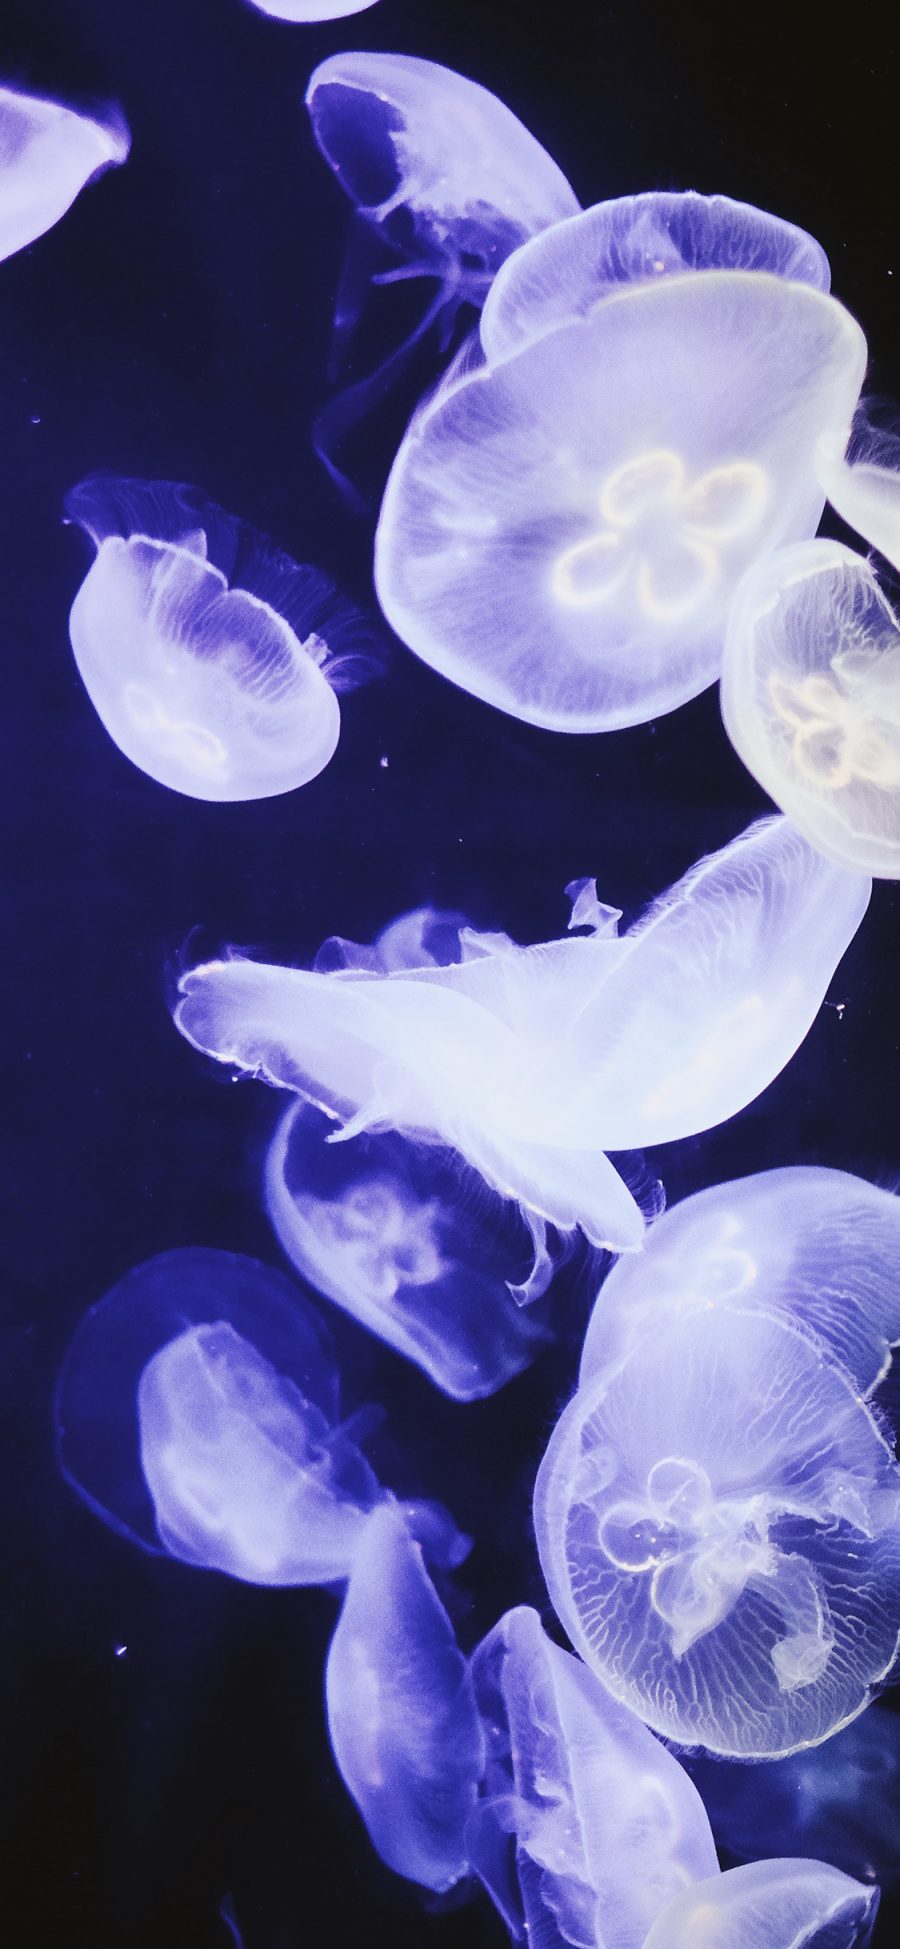 [2436×1125]水母 浮游 群体 荧光 苹果手机壁纸图片